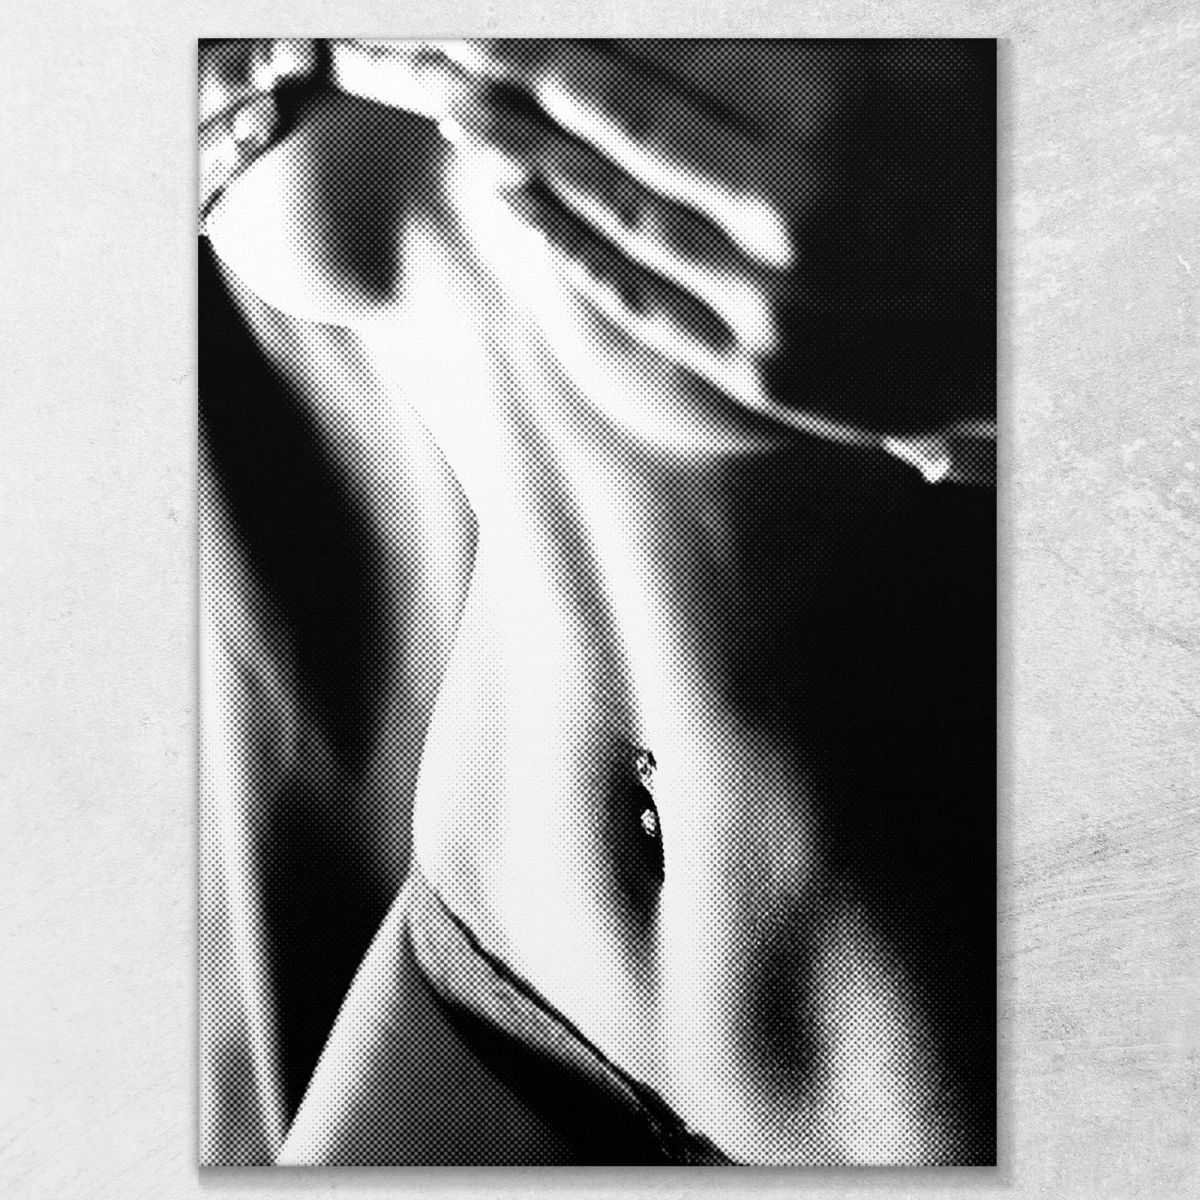 ❤️ Quadro astratto Body d'acciaio sexy girl quadro moderno stampa su tela asn7